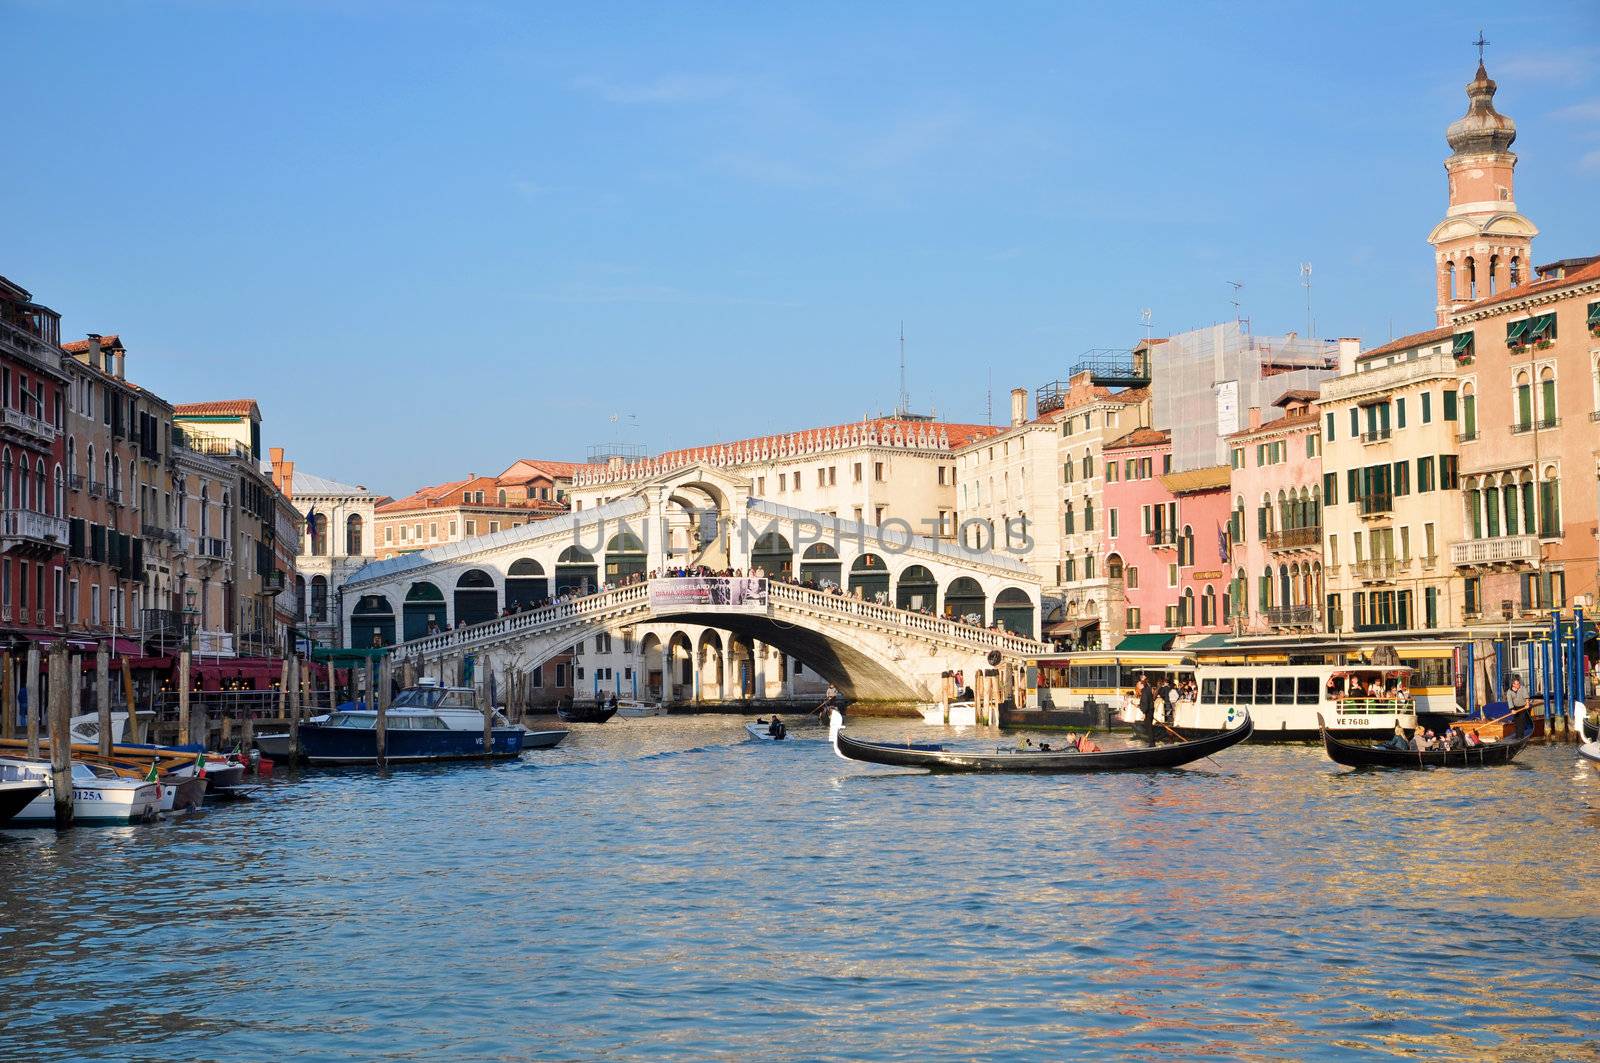 Ponte di Rialto Venezia by rmarinello